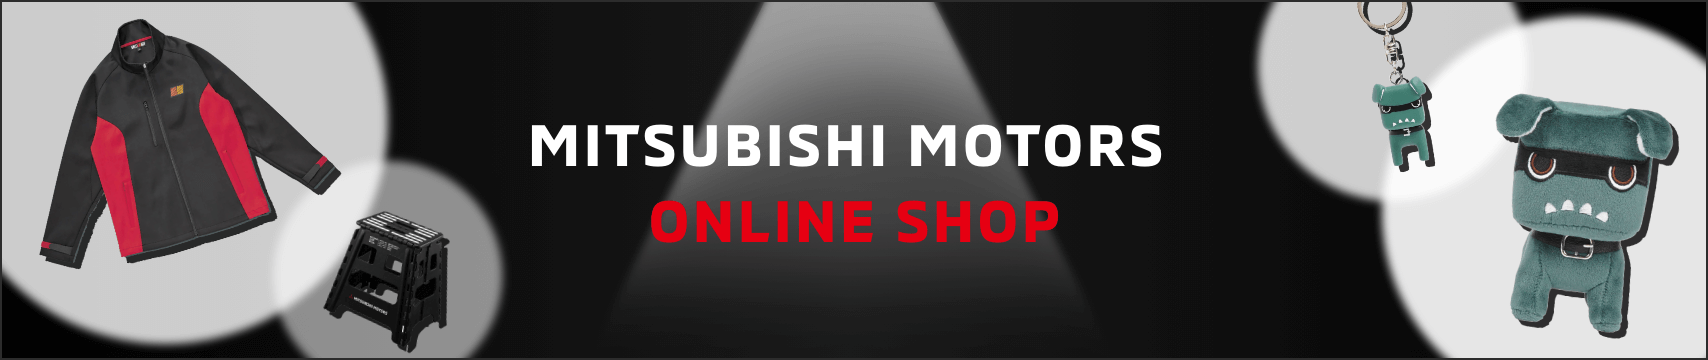 MITSUBISHI MOTORS ONLINE SHOIP